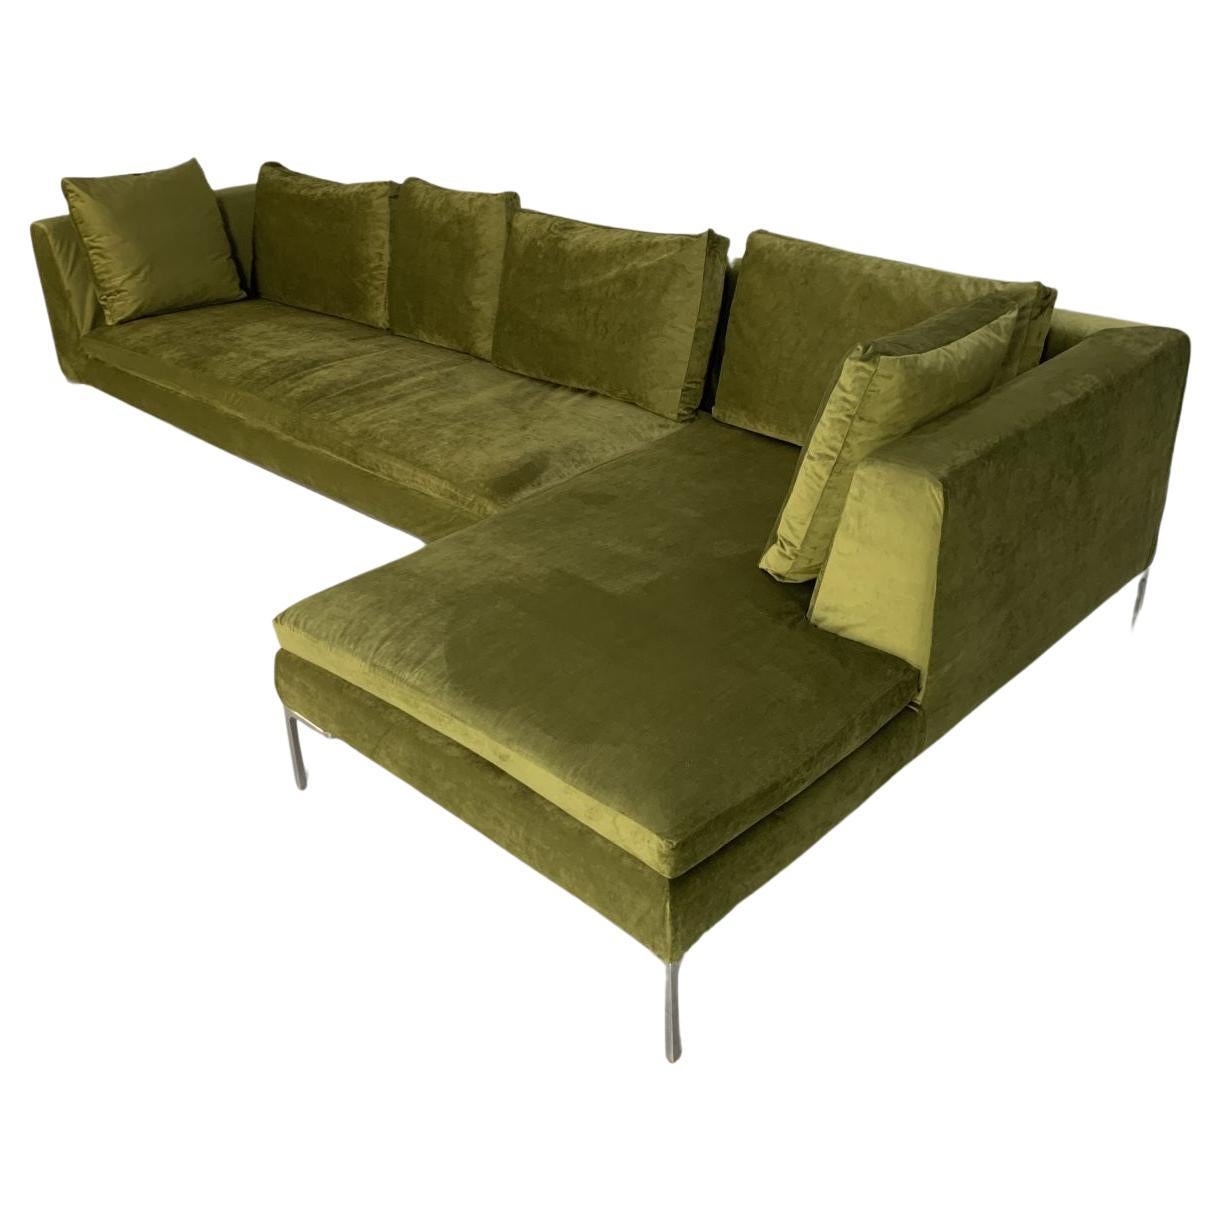 B&B Italia “Charles” L-Shape Sofa, in Mid-Green Velvet For Sale at 1stDibs